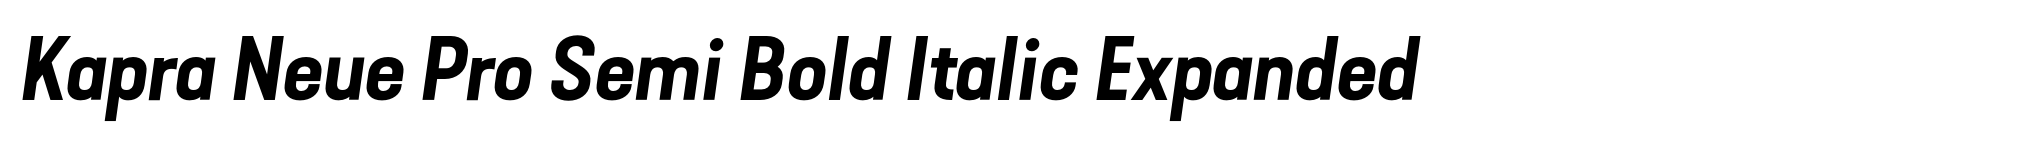 Kapra Neue Pro Semi Bold Italic Expanded image